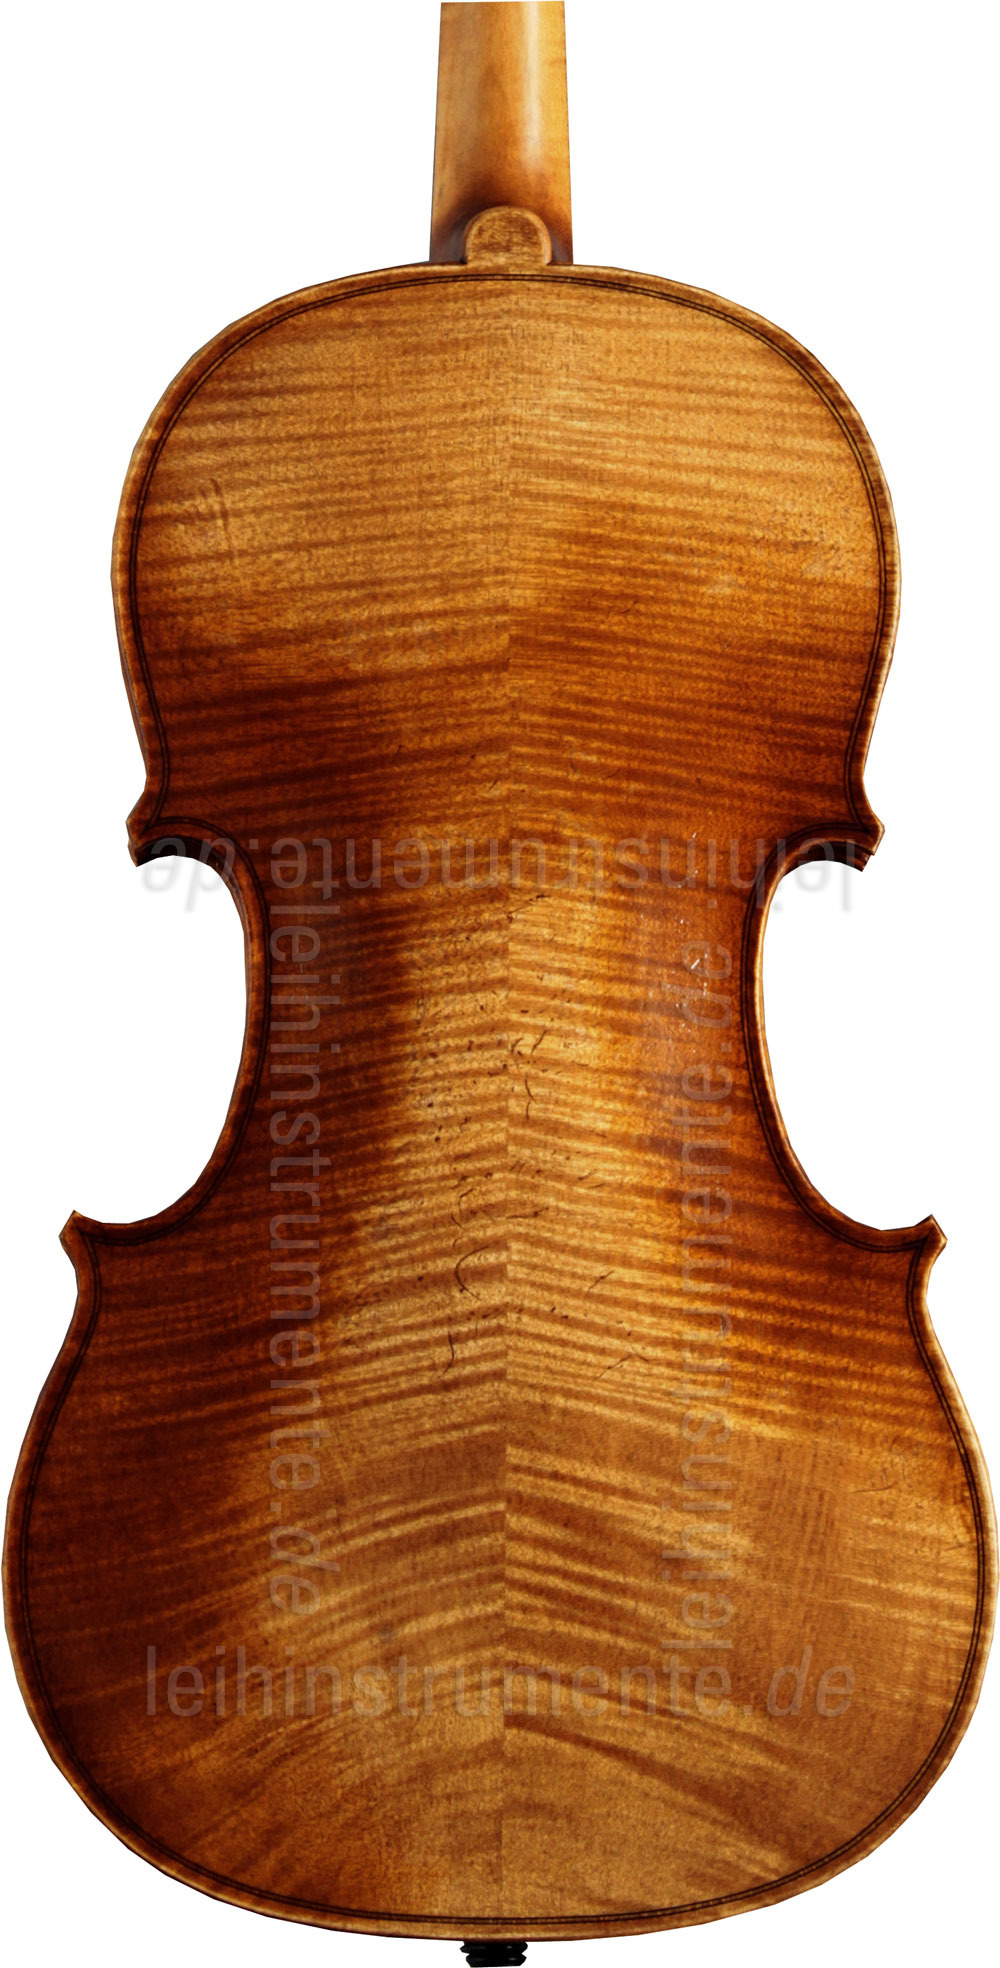 to article description / price 4/4 Violinset - HOFNER MODEL H11E-V-0 PRESTO - all solid - shoulder rest